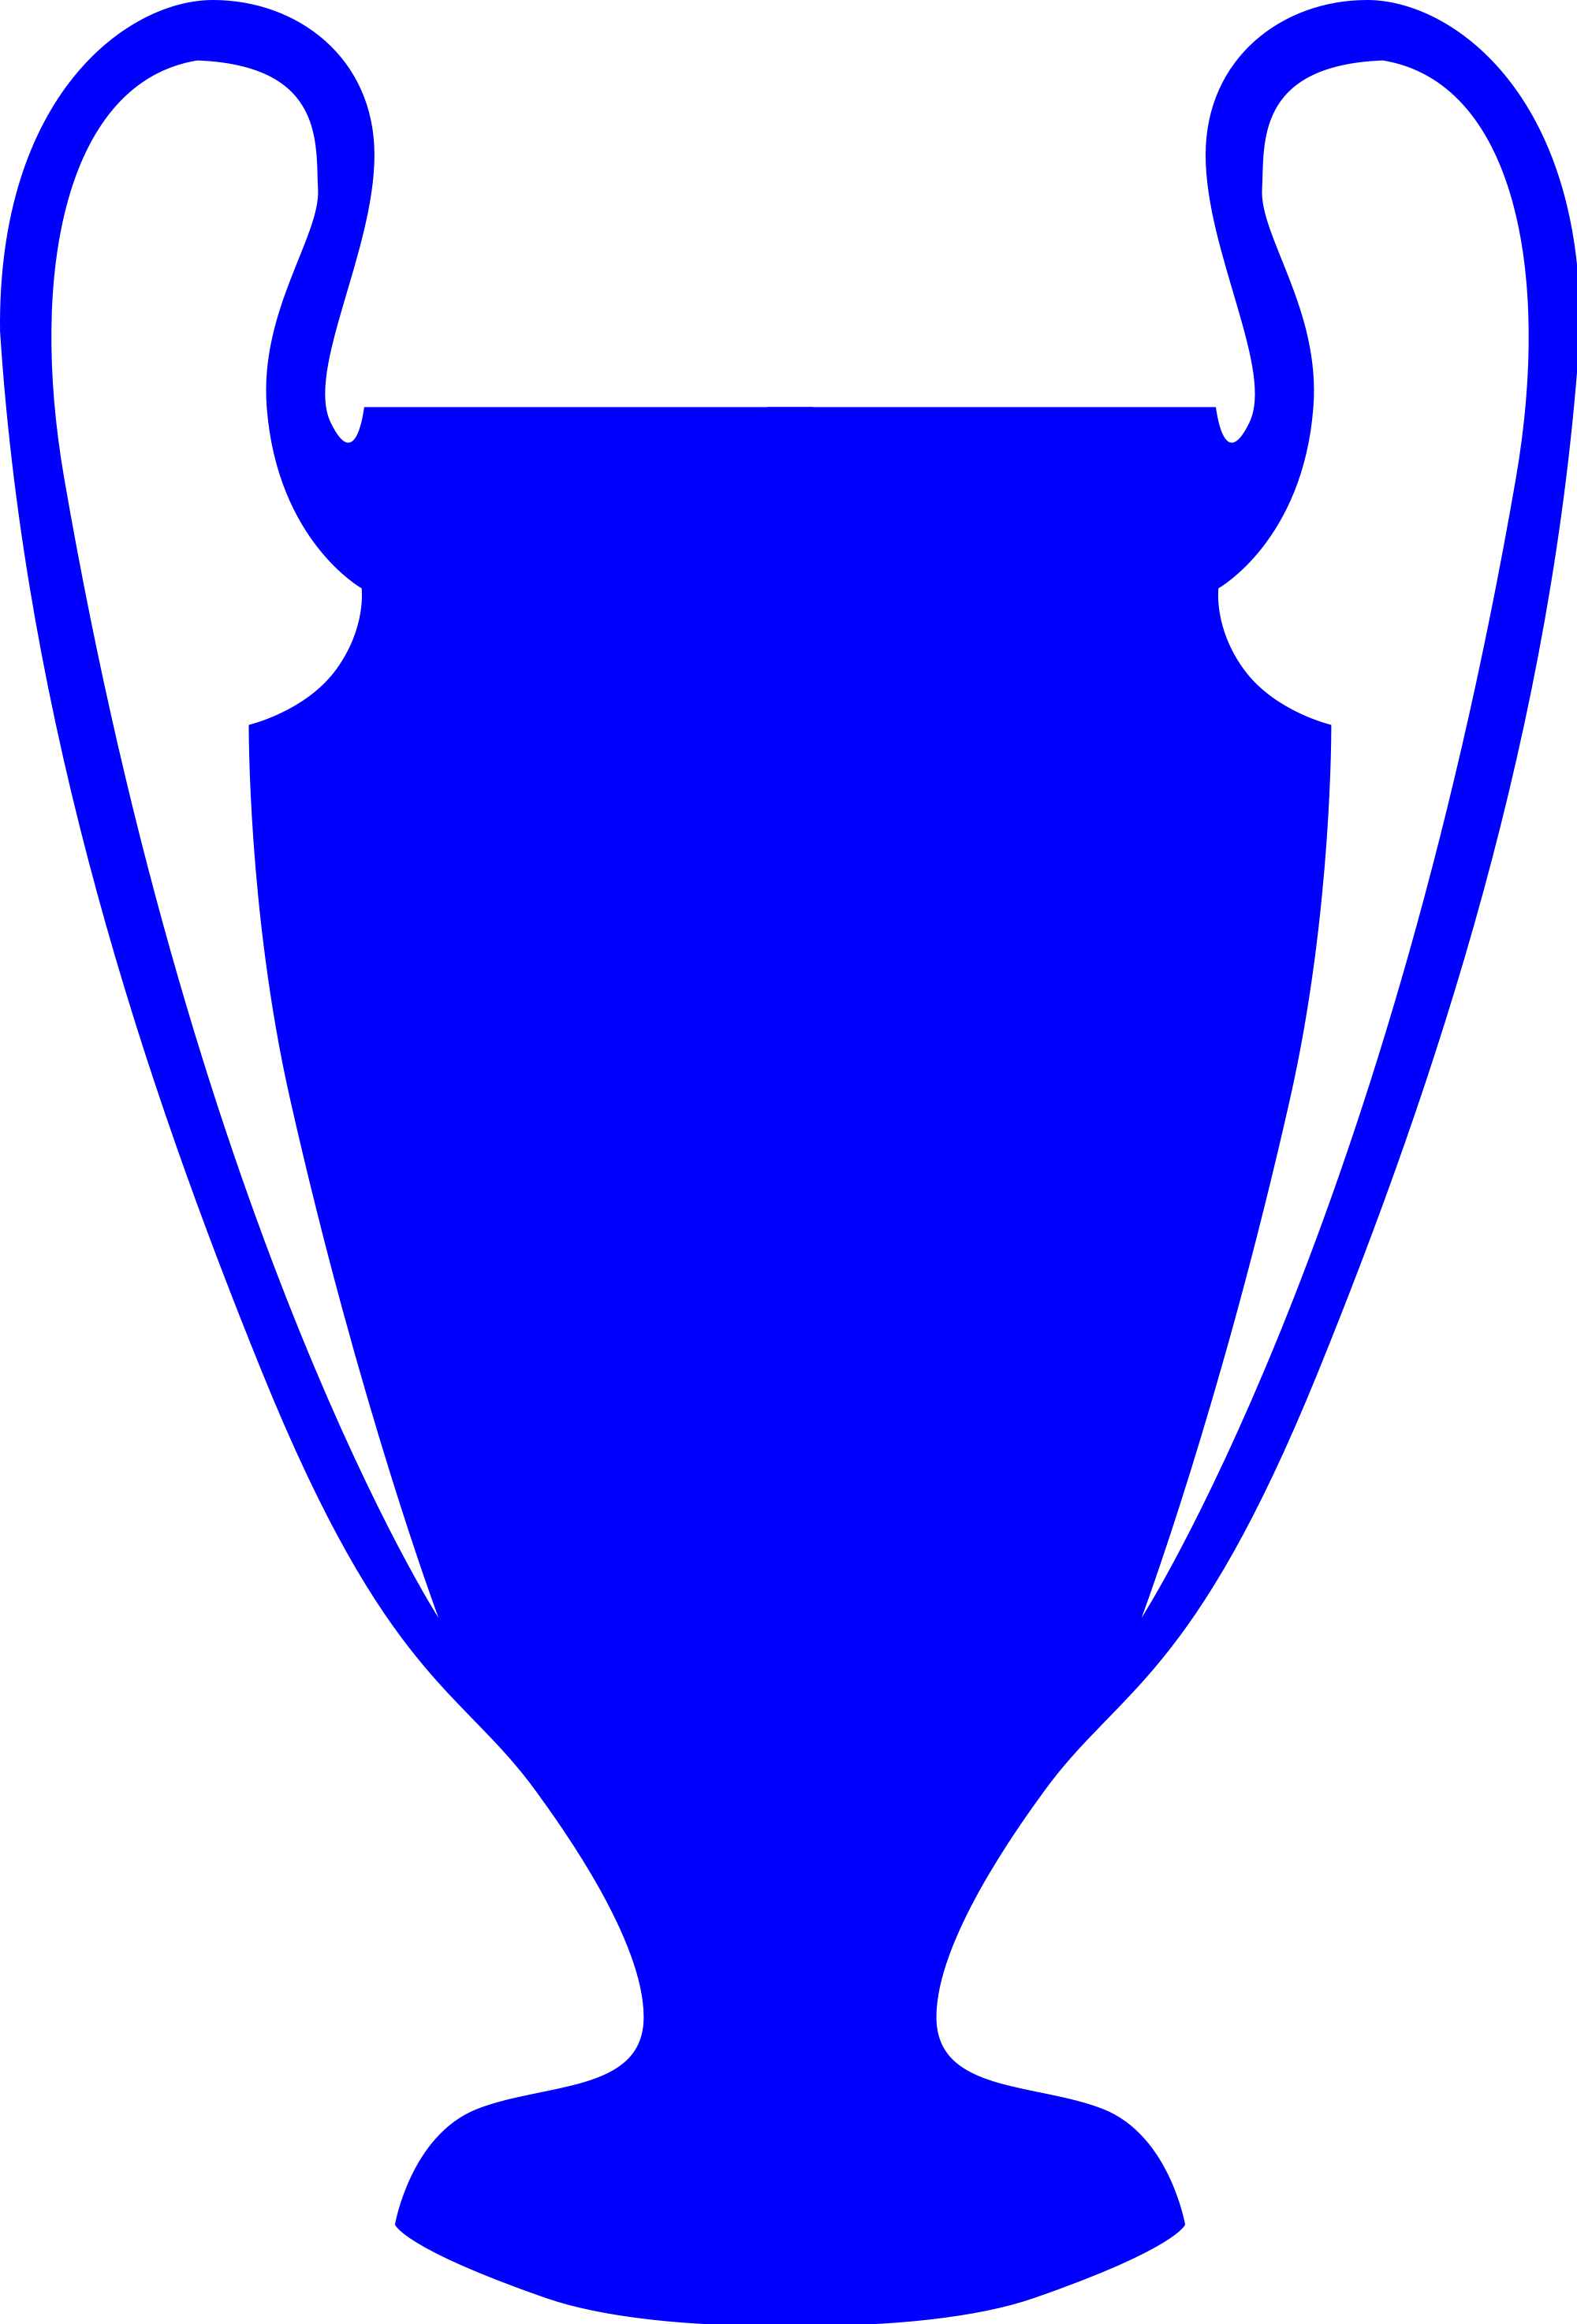 Cup Clipart Champions League - Champions League Trophy Vector (2000x2948)